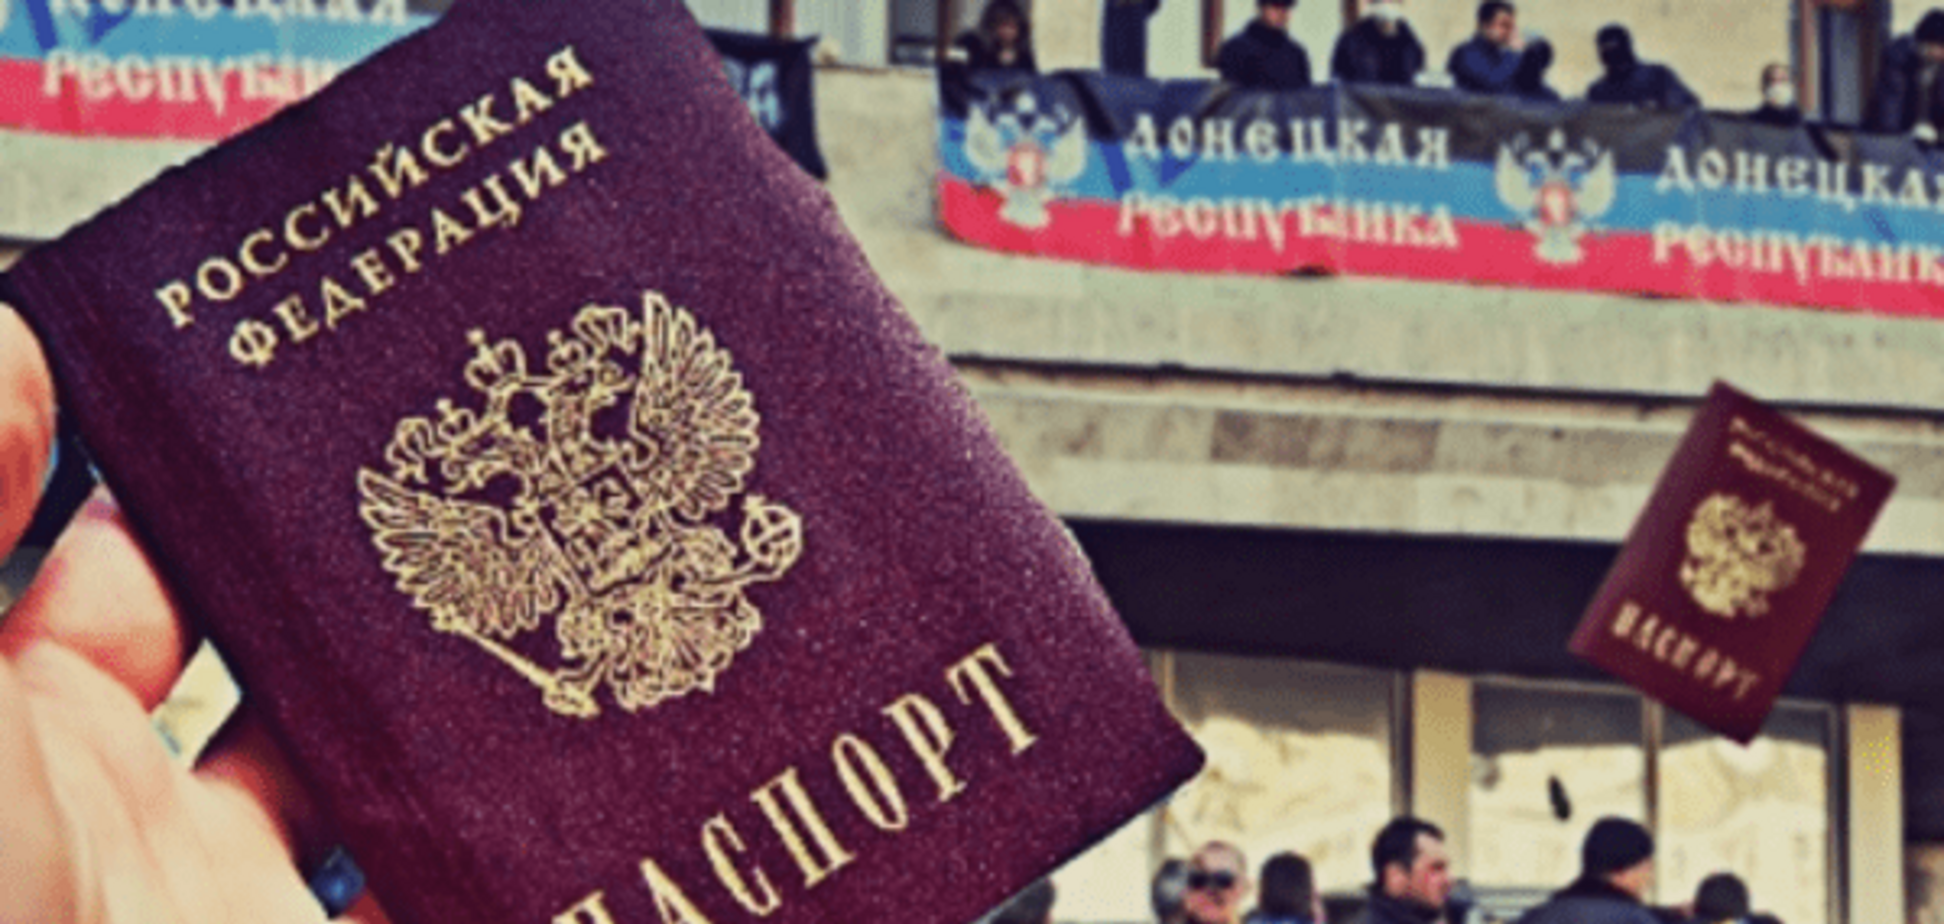 Паспорта Росси на Донбассе